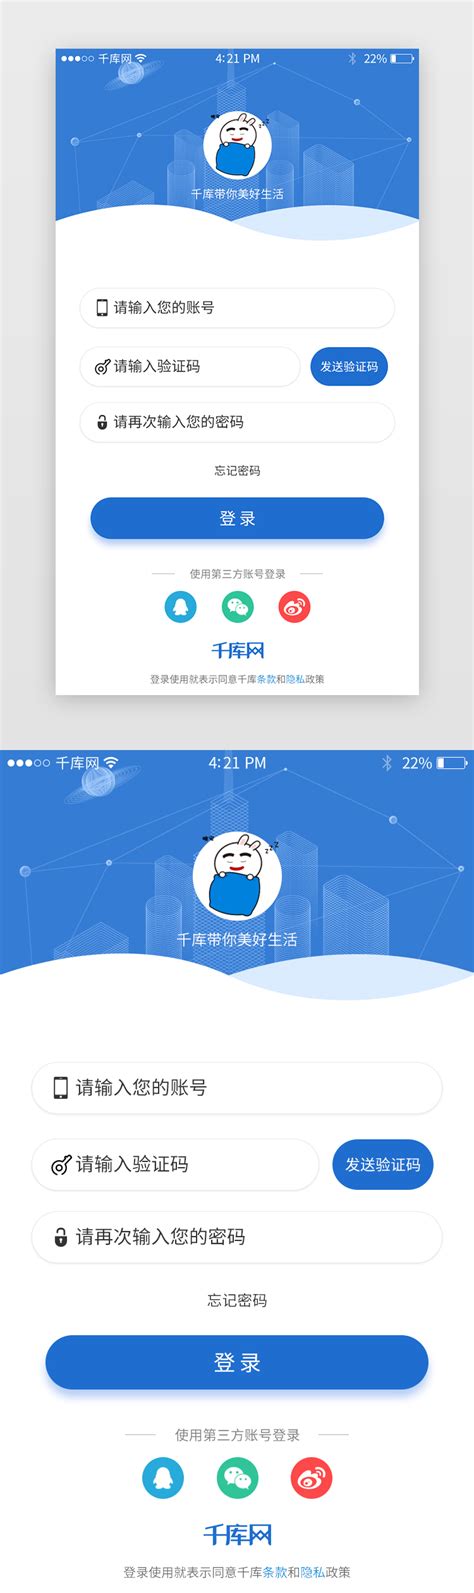 ‎字体下载-手机字体app&字体安装 on the App Store